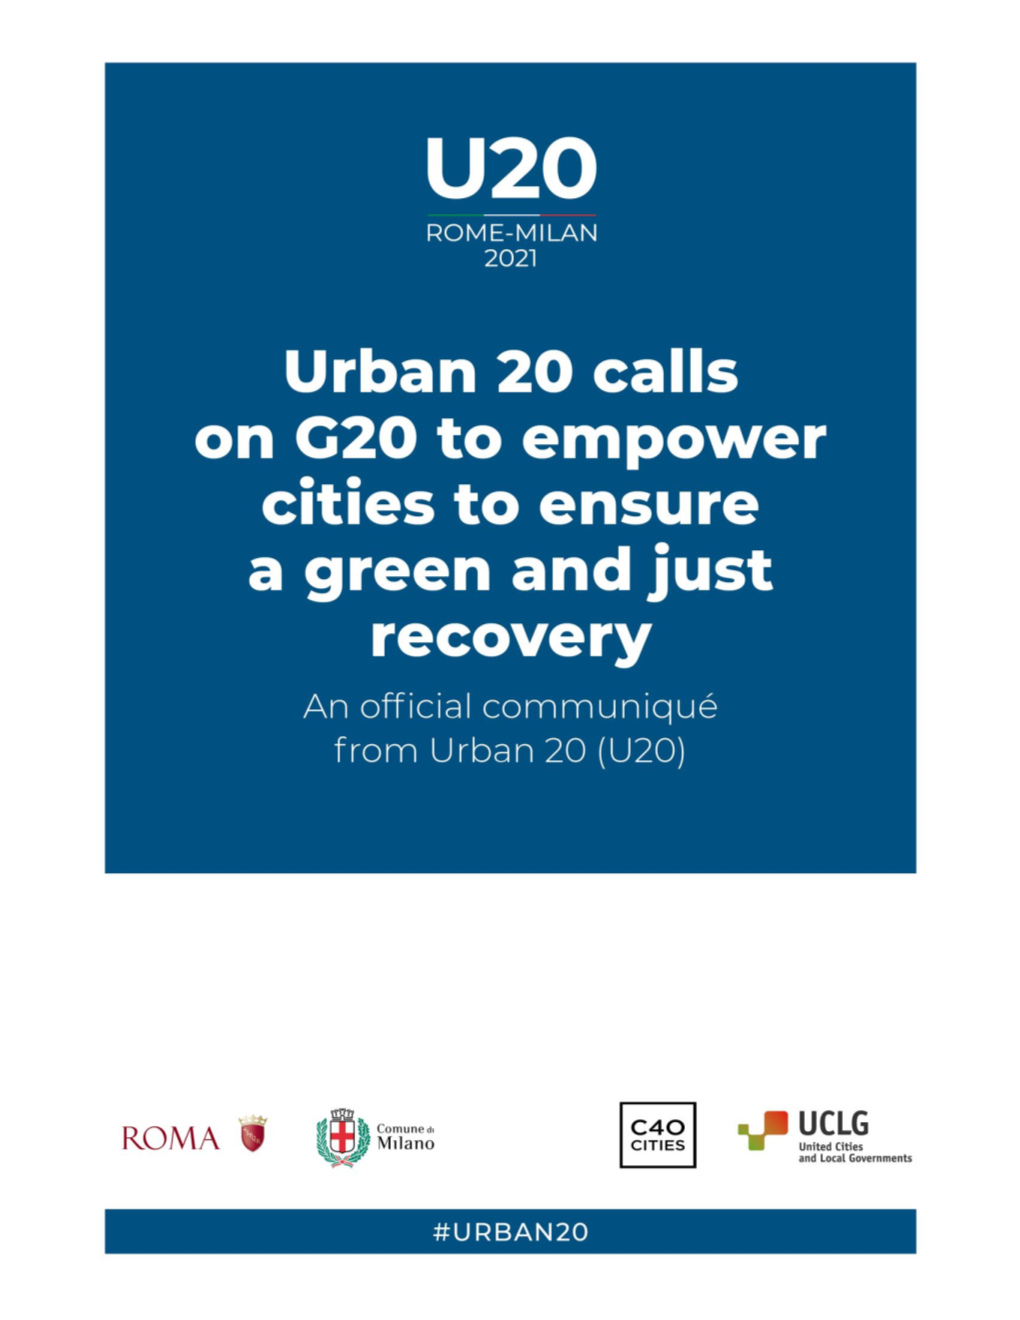 U20 Rome-Milan 2021 – Urban 20 Calls on G20 To